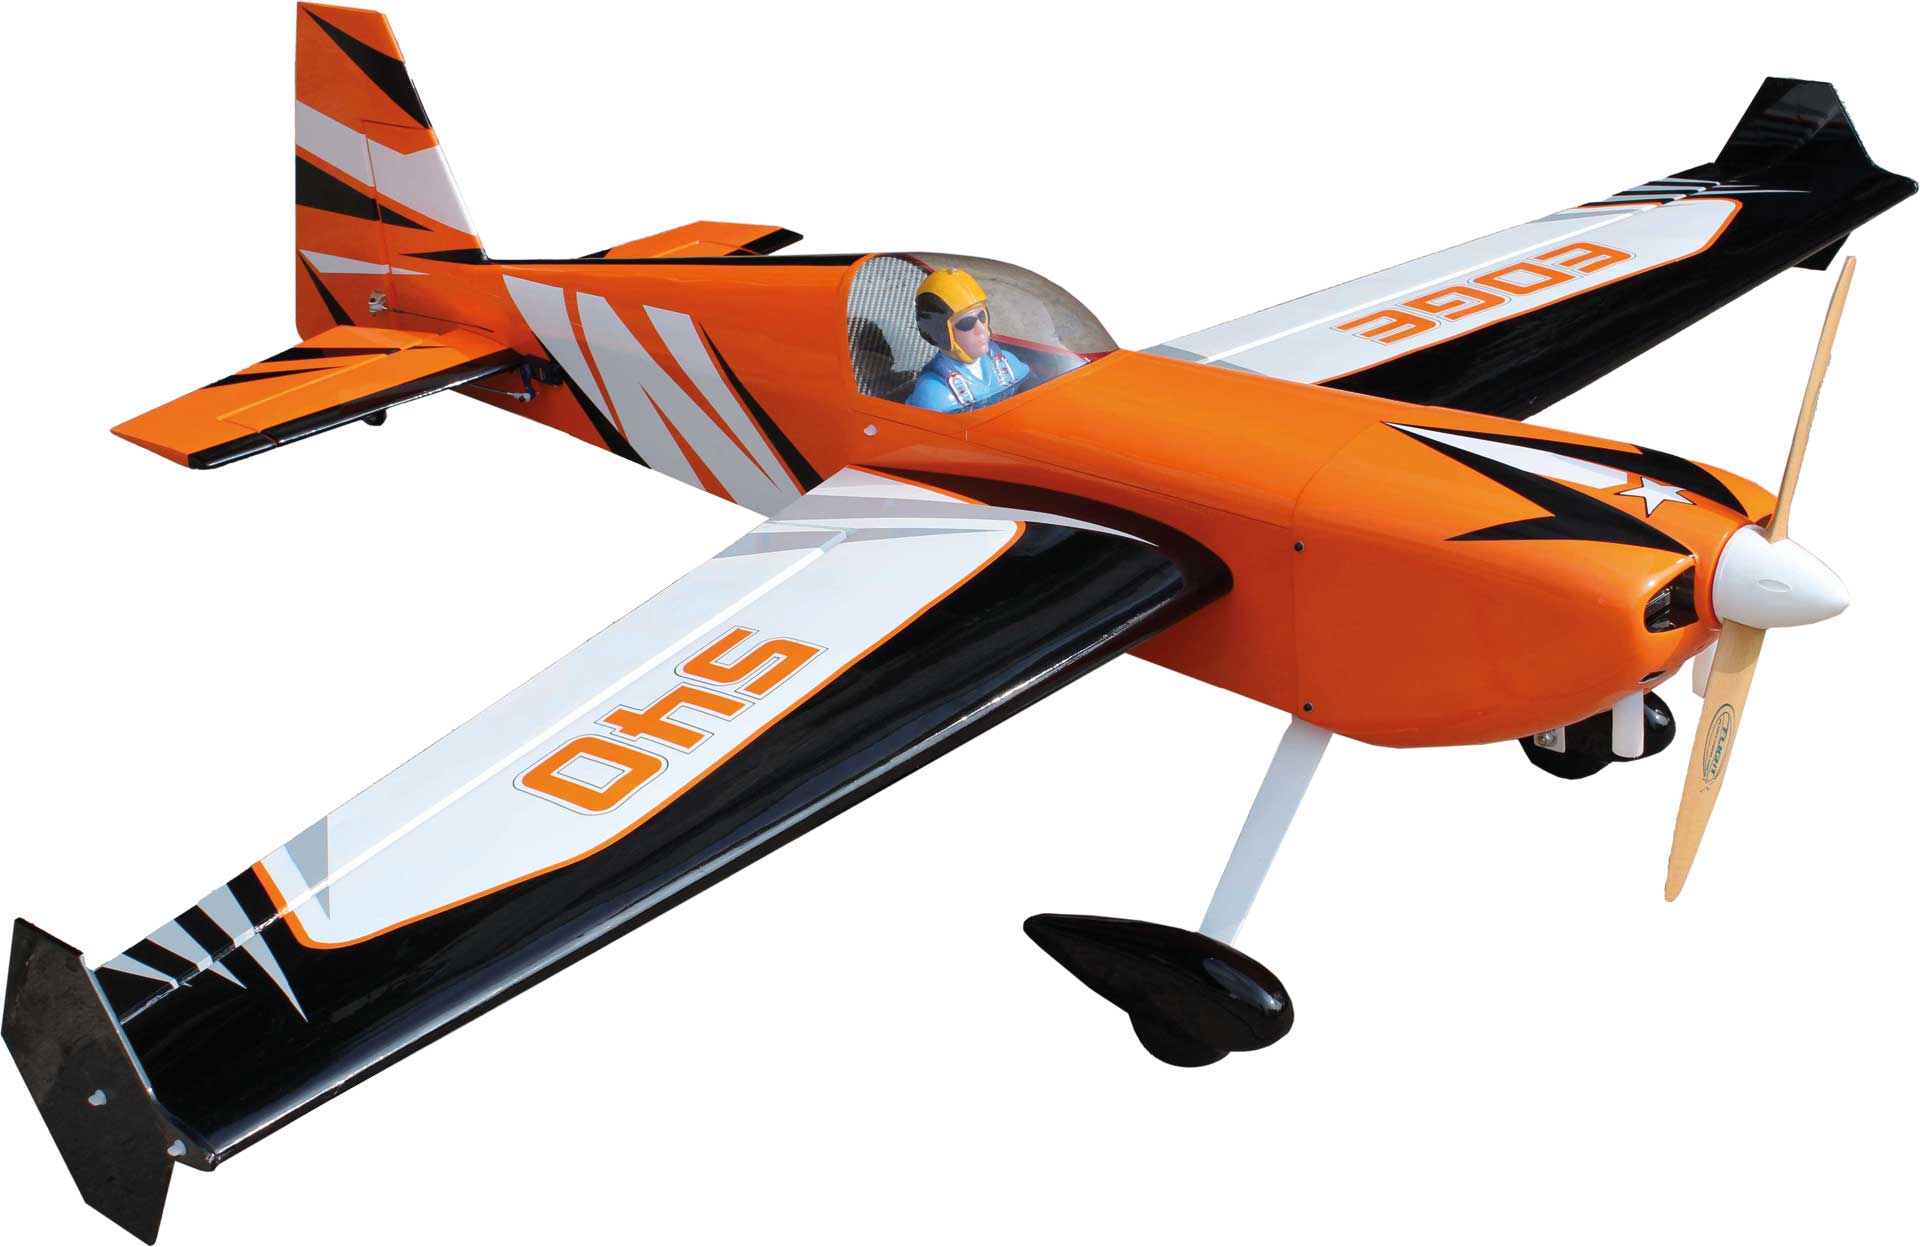 Seagull Models ( SG-Models ) Edge 540 V3 77.5" 35-40cc Orange upgrade carbone version acrobatique